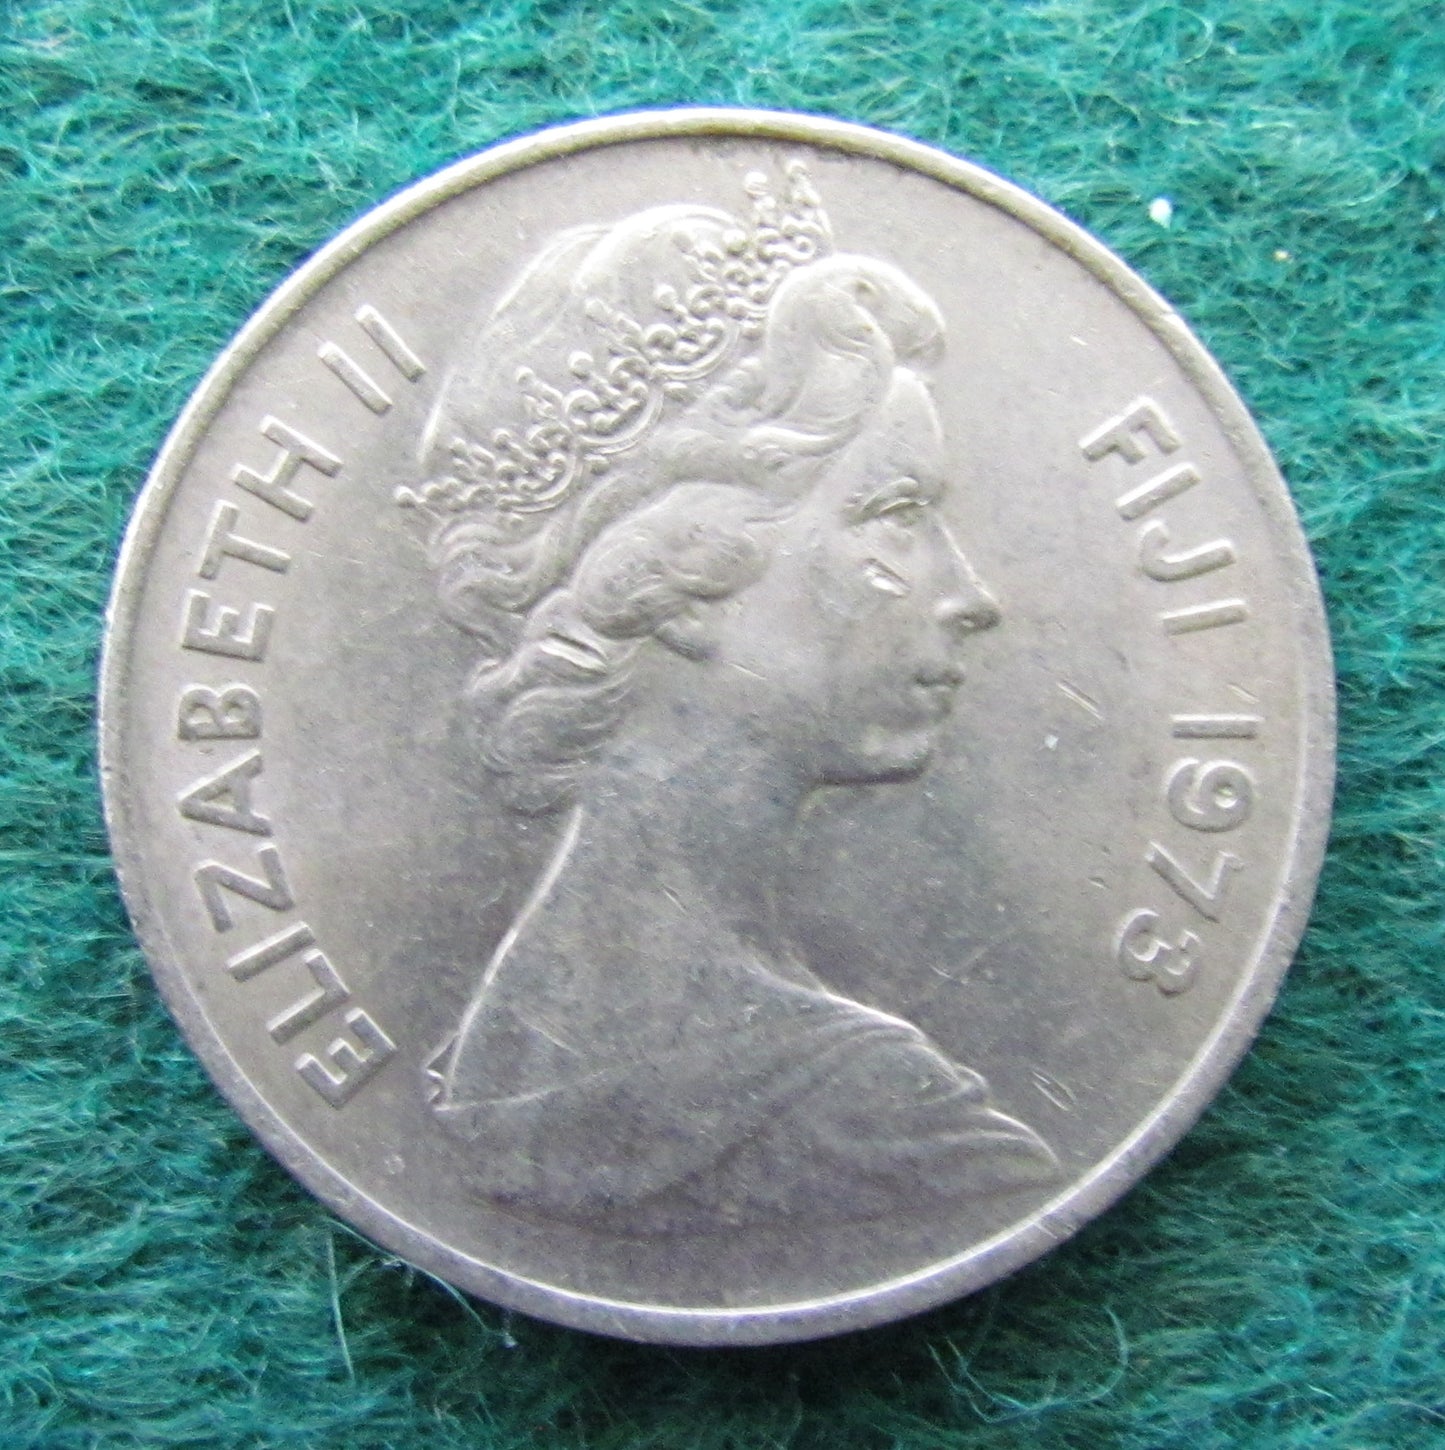 Fiji 1973 10 Cent Queen Elizabeth Coin